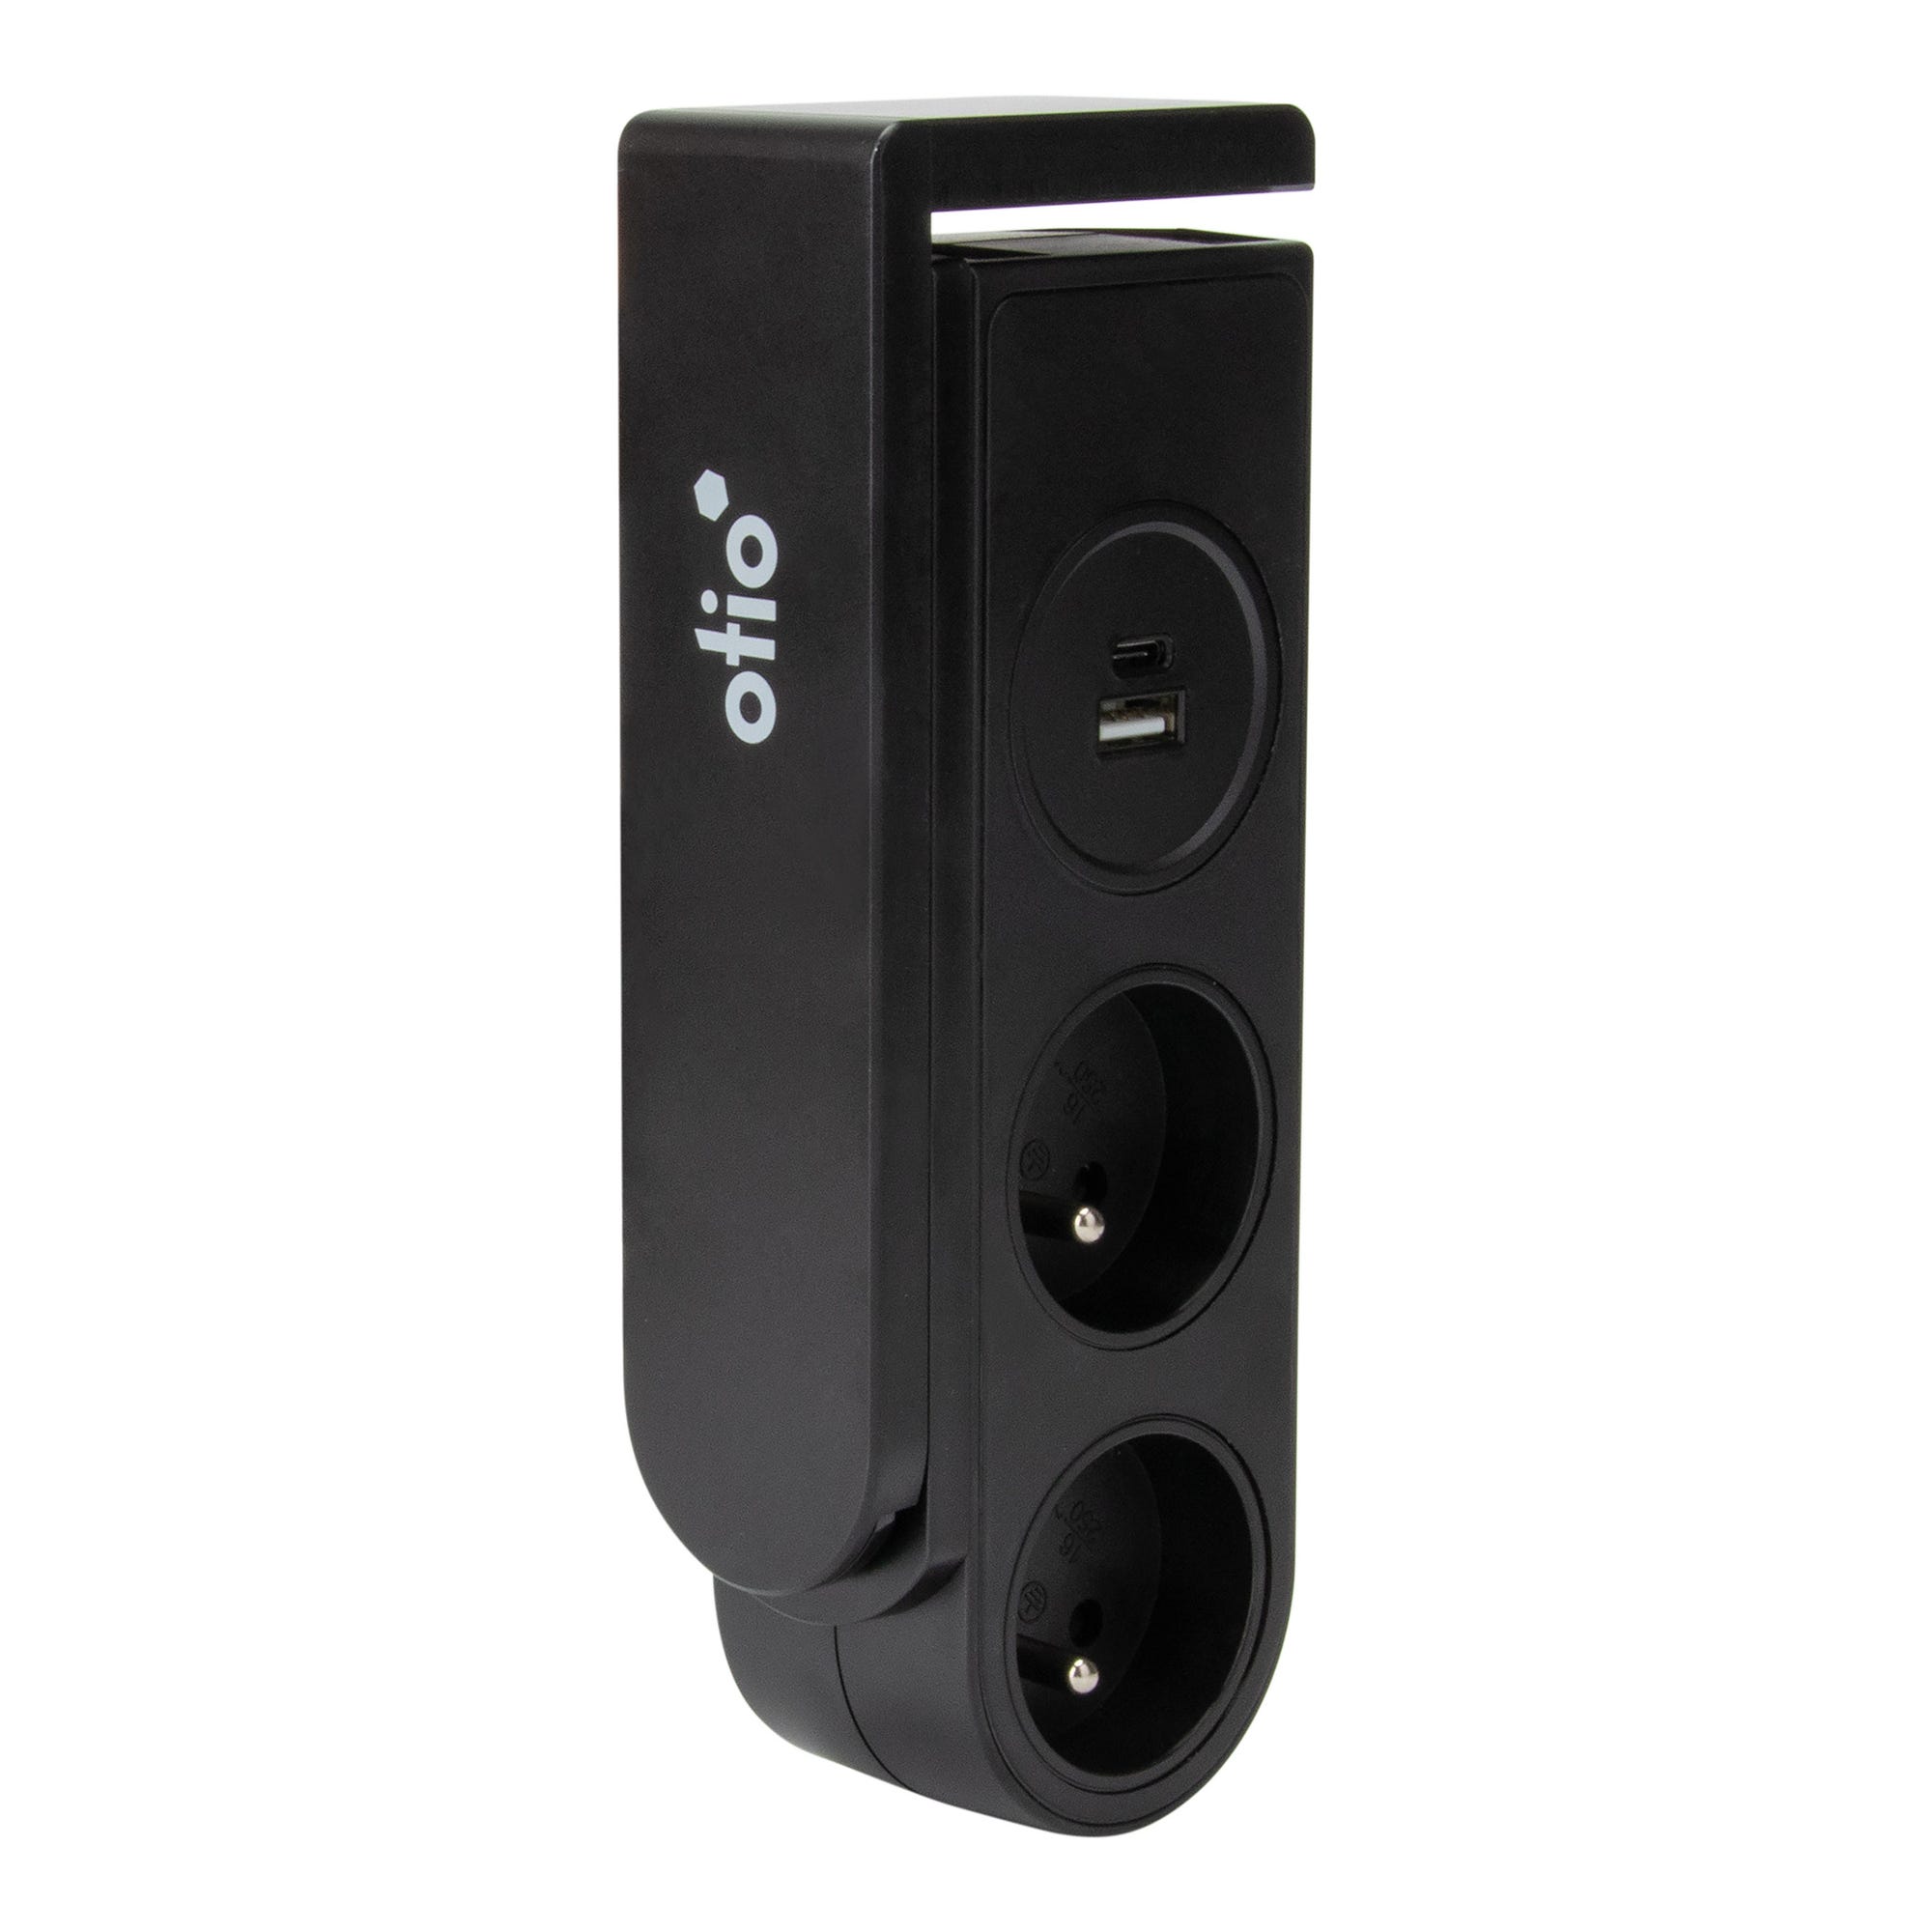 Bloc multiprise Gekko clipsable avec chargeurs USB Noir - OTIO 0